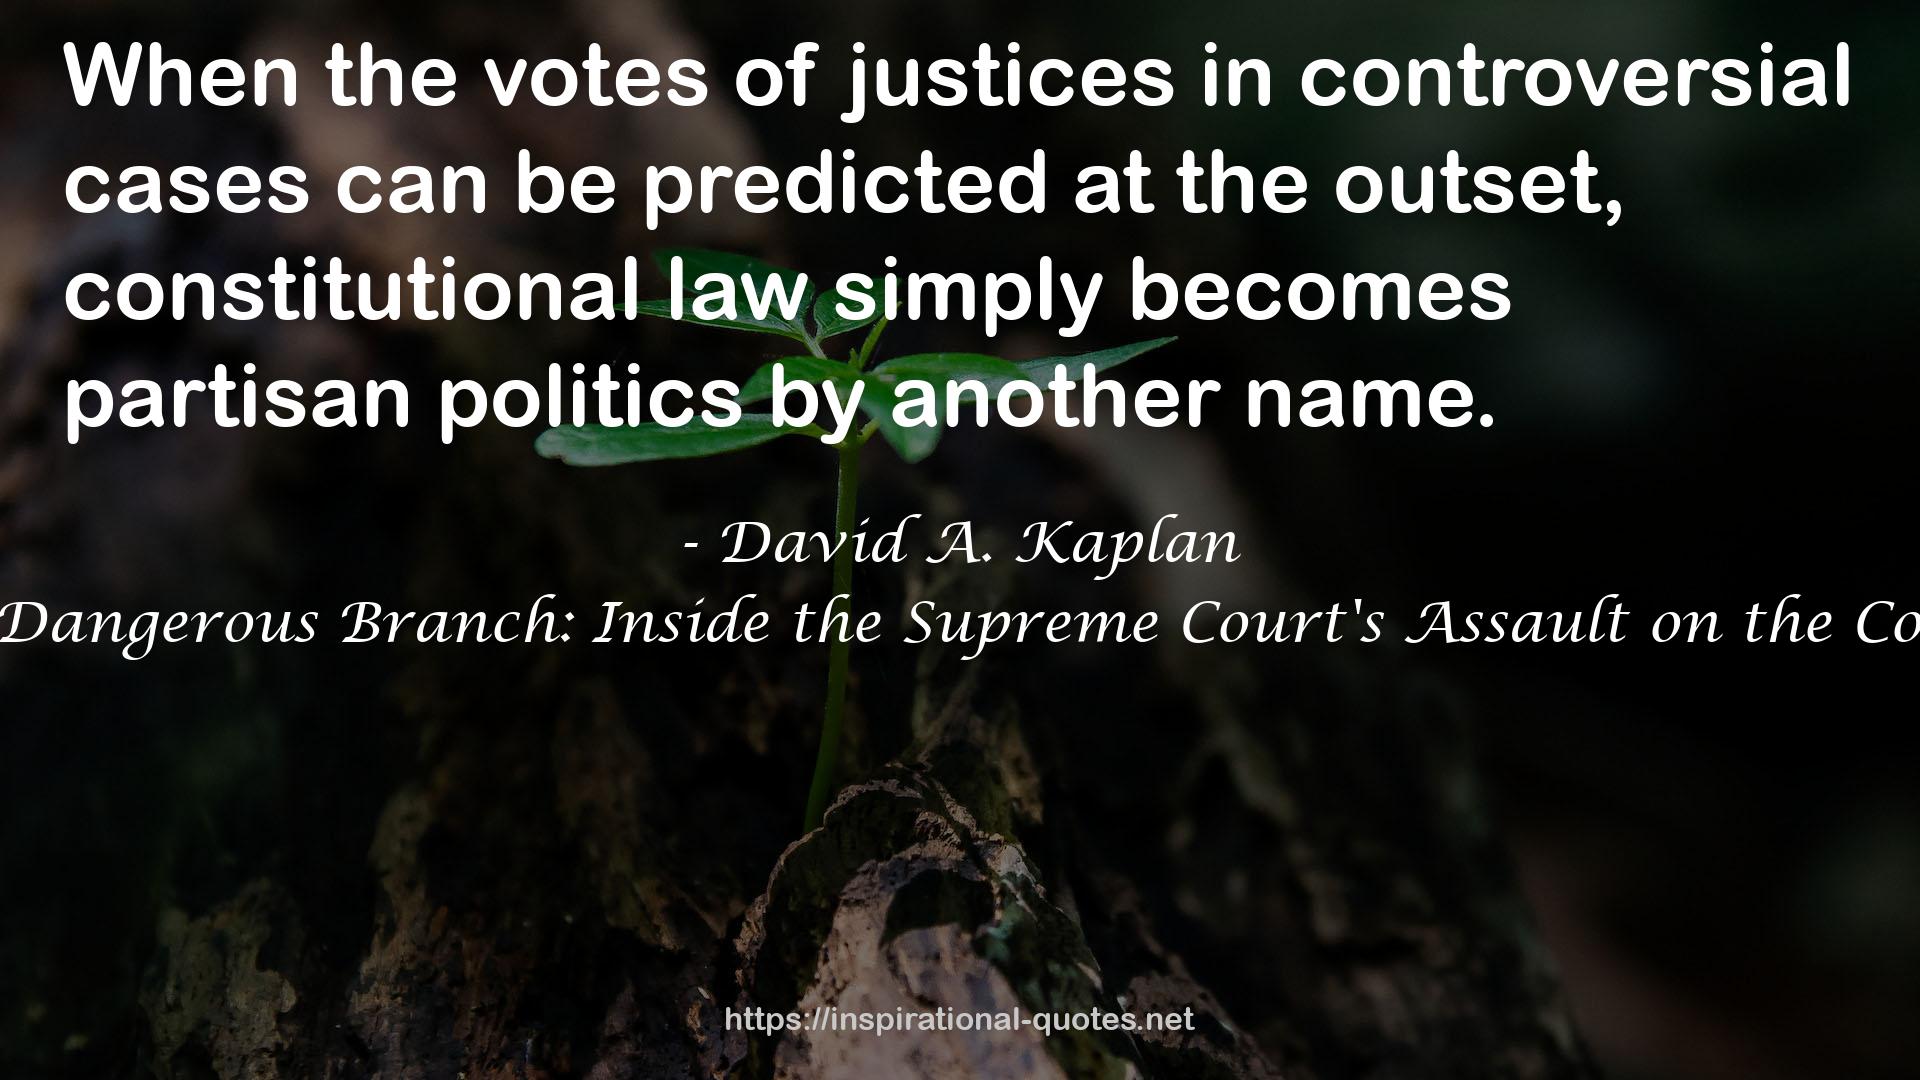 David A. Kaplan QUOTES